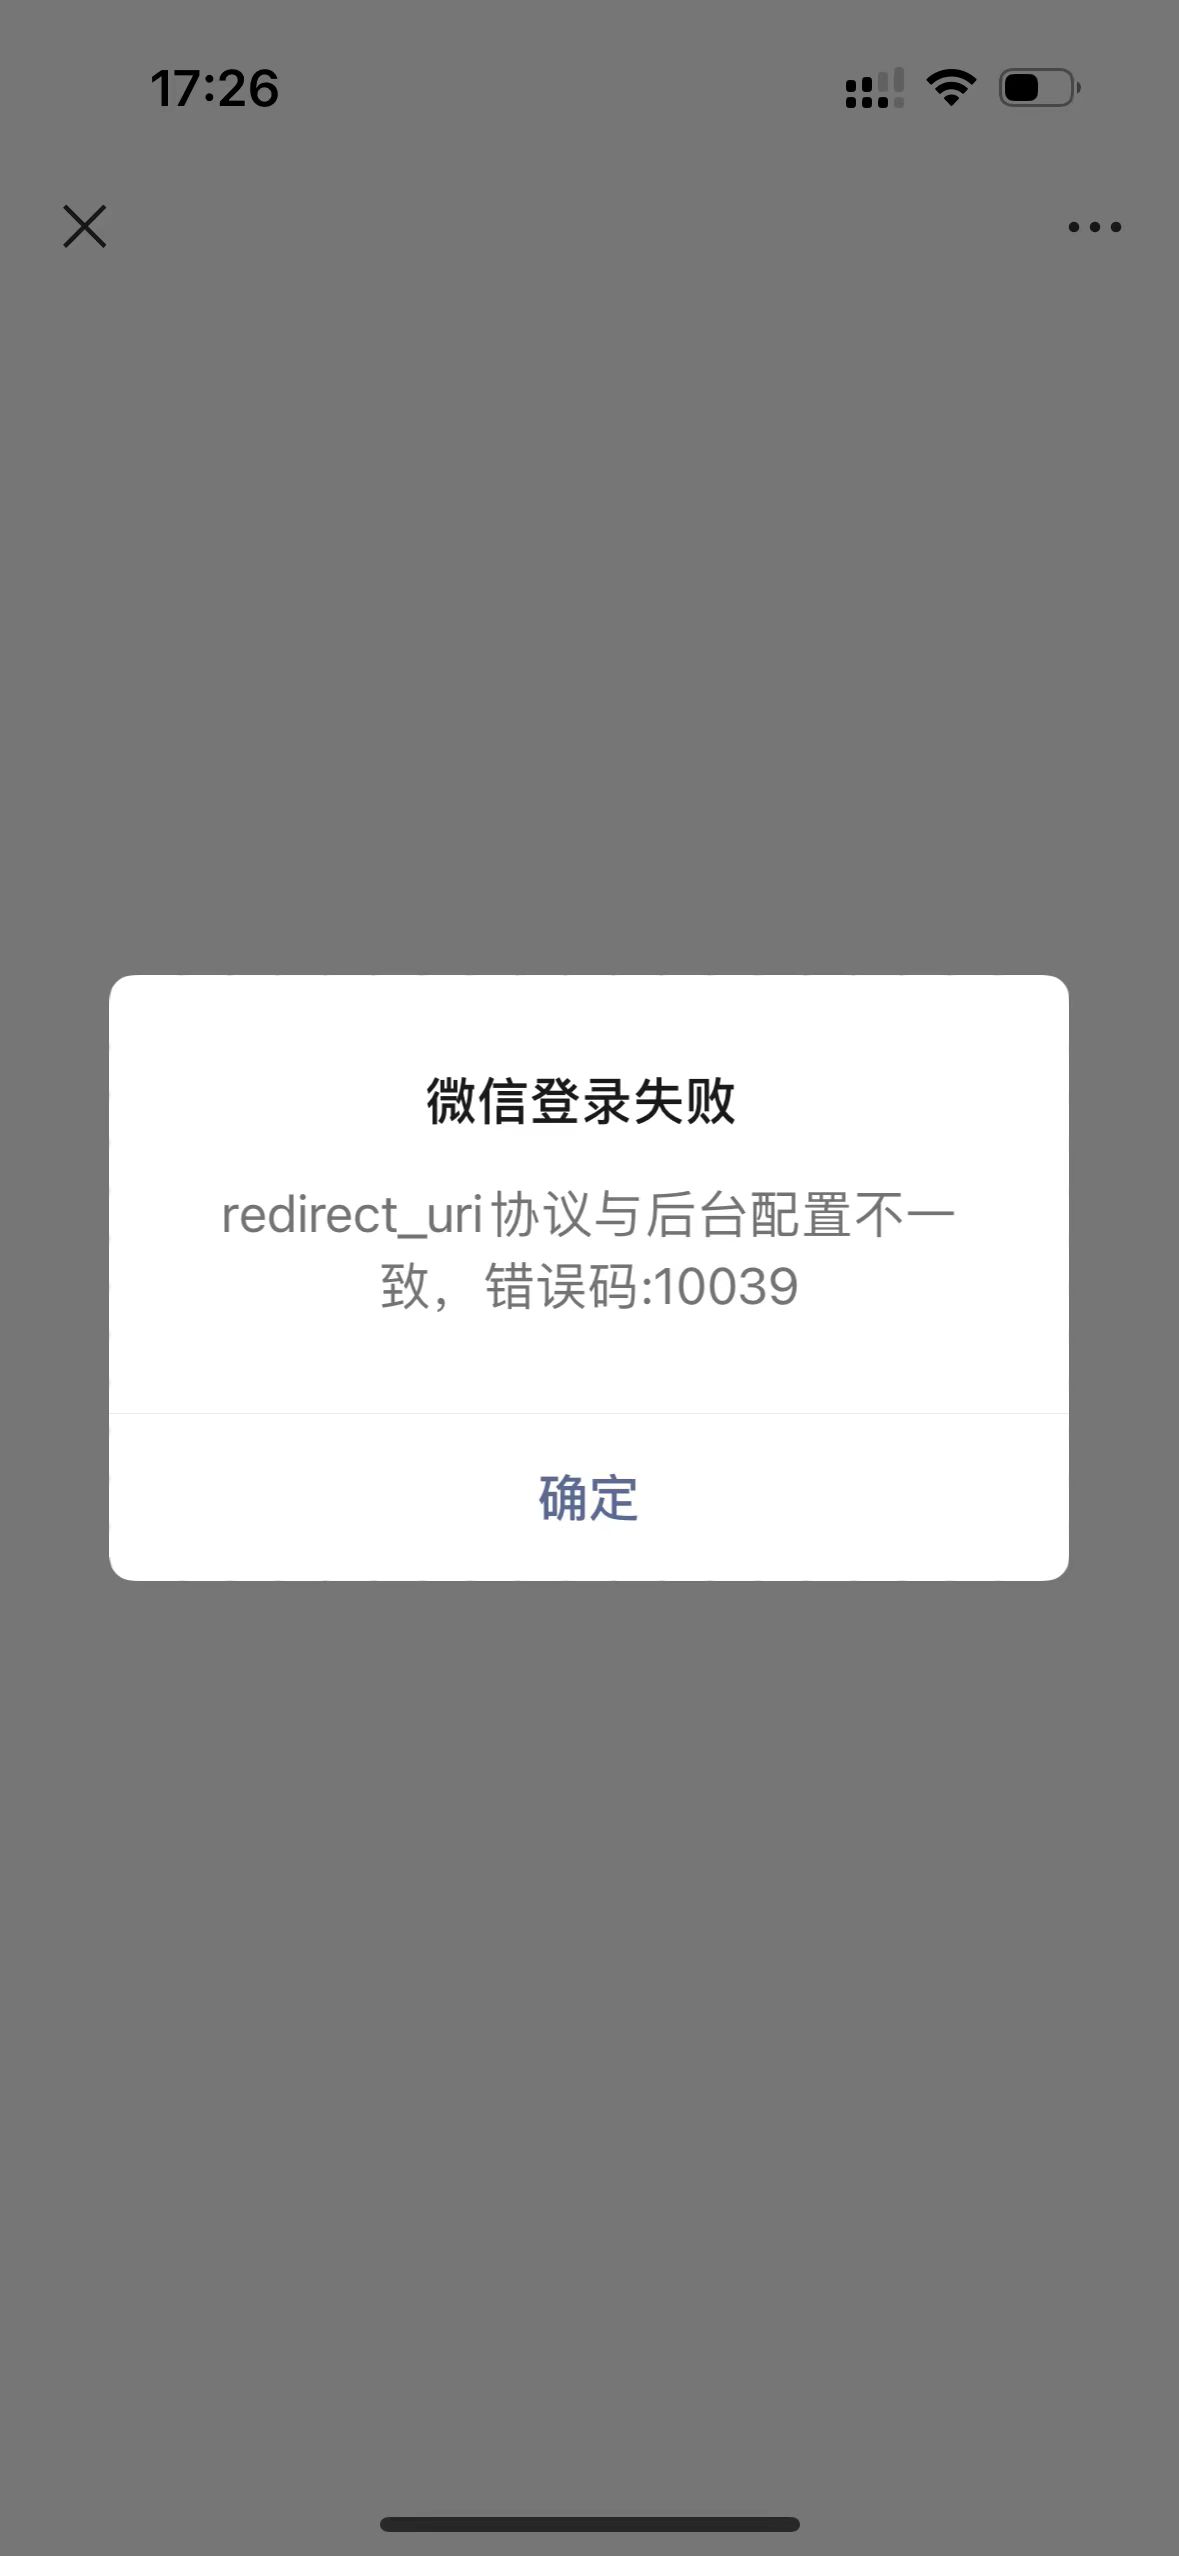 微信支付 redirect_uri 提示  协议与后台配置不一致，错误码:10039